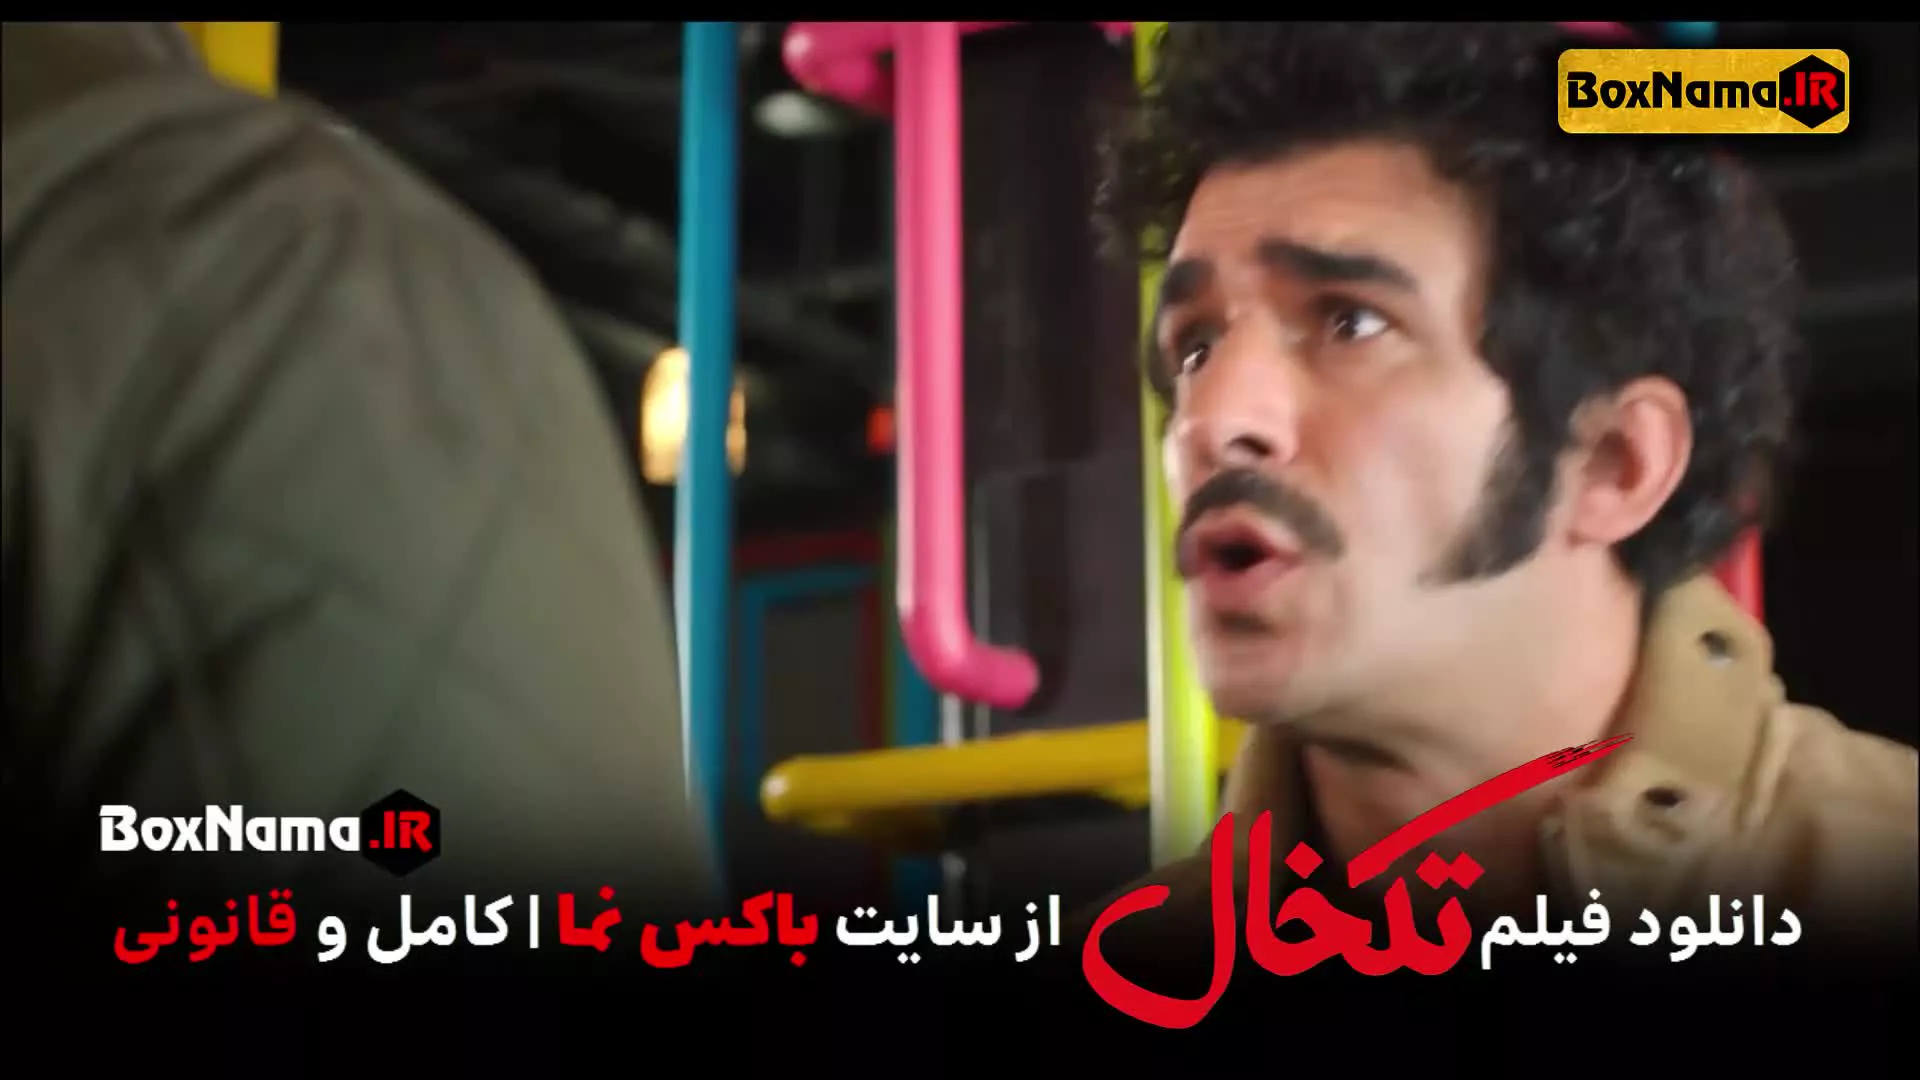 فیلم تکخال سحر قریشی (دانلود فیلم سینمایی طنز ایرانی جدید)